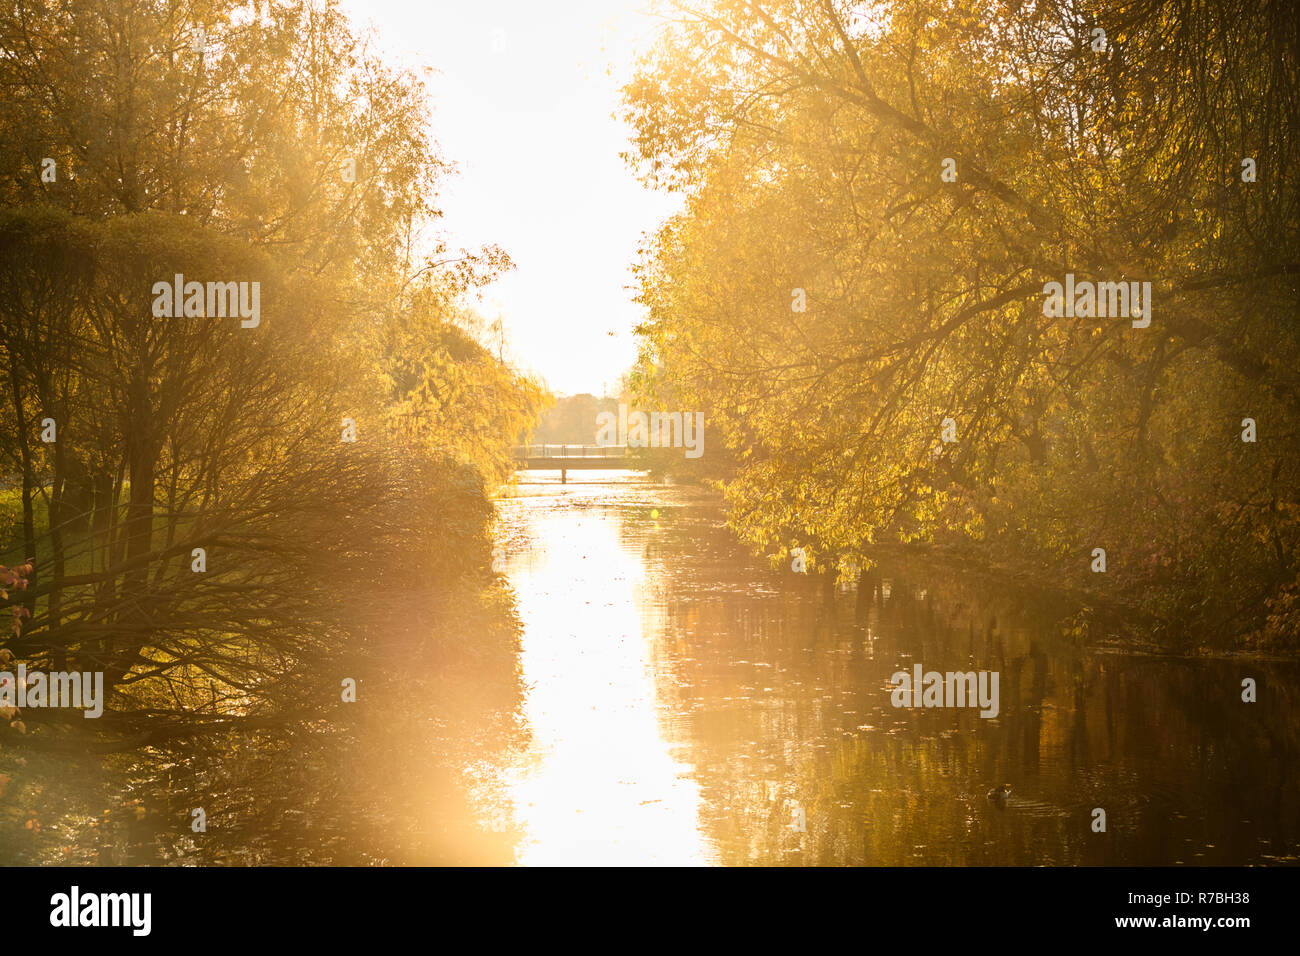 L'automne dans le parc d'or, remblai de la rivière, à quelques personnes sur le pont, journée ensoleillée, temps clair, reflets, leafs sur l'eau, l'ombre des arbres Banque D'Images